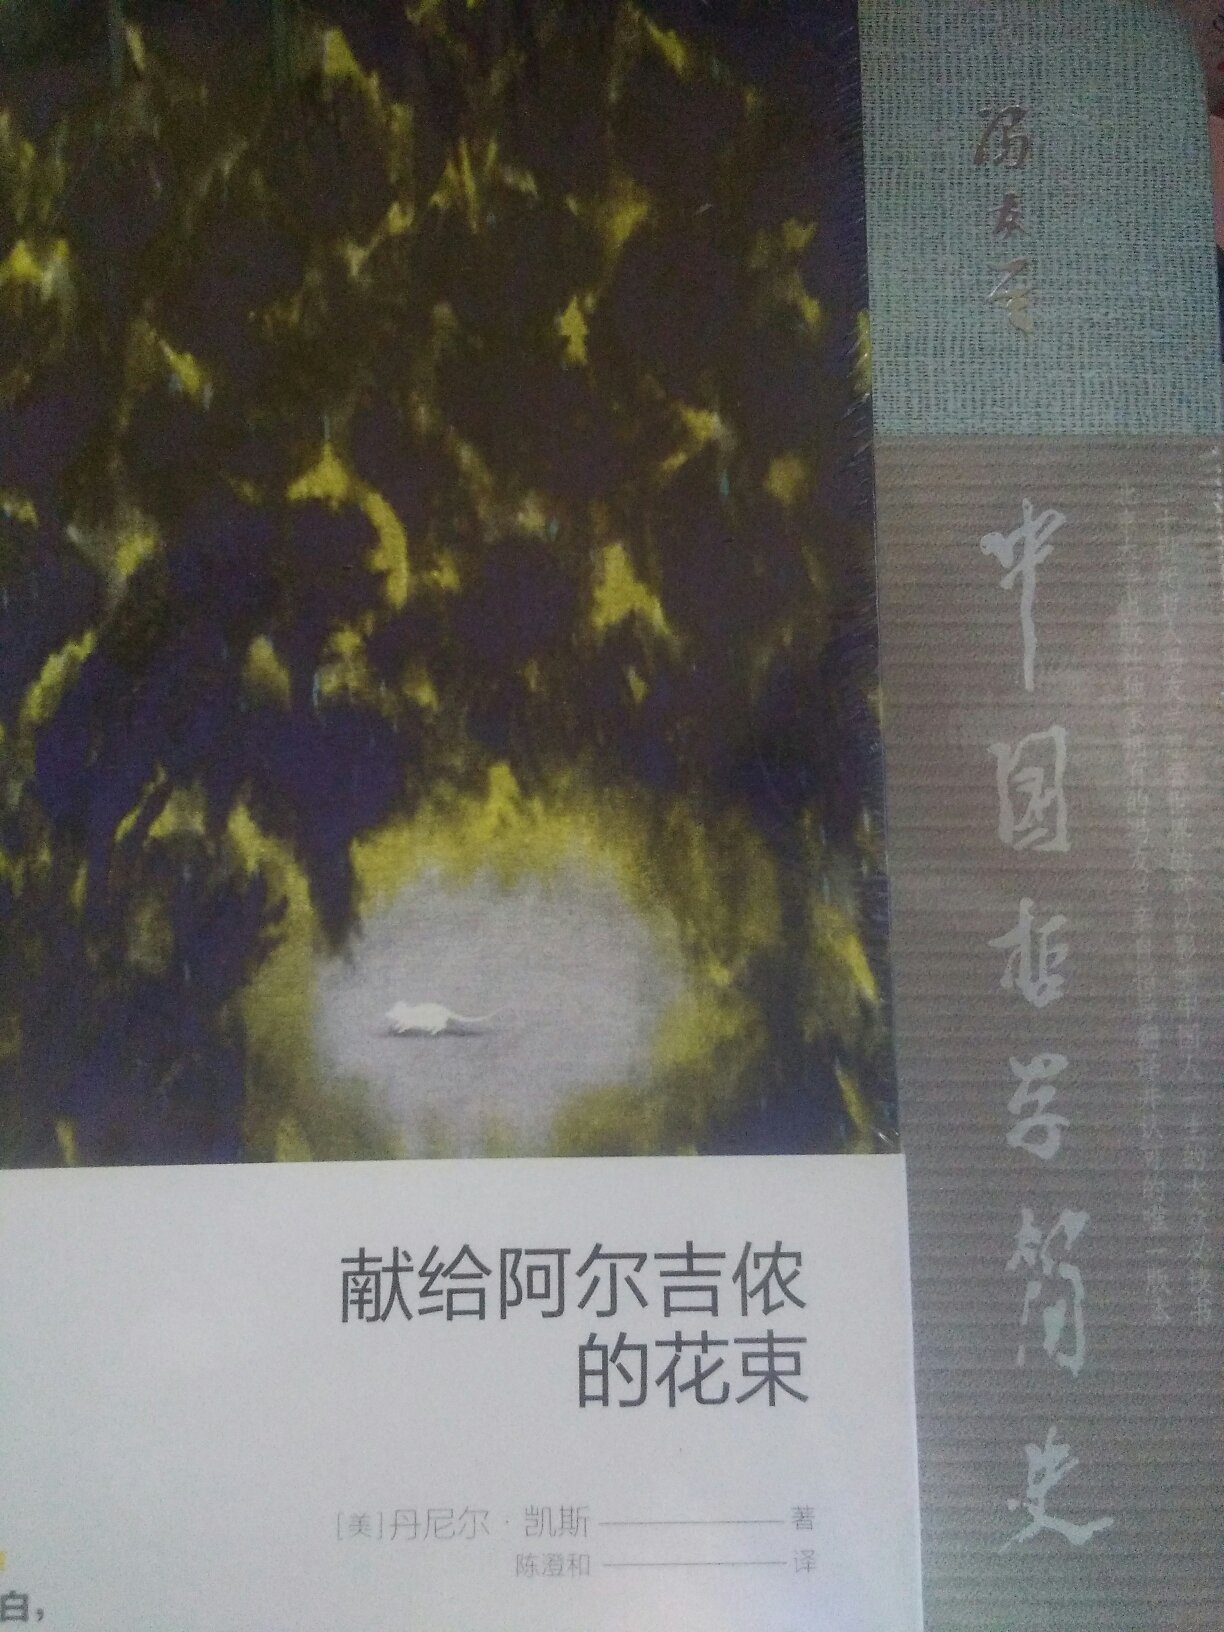 文科生一枚，读冯友兰先生的书大有益处:)